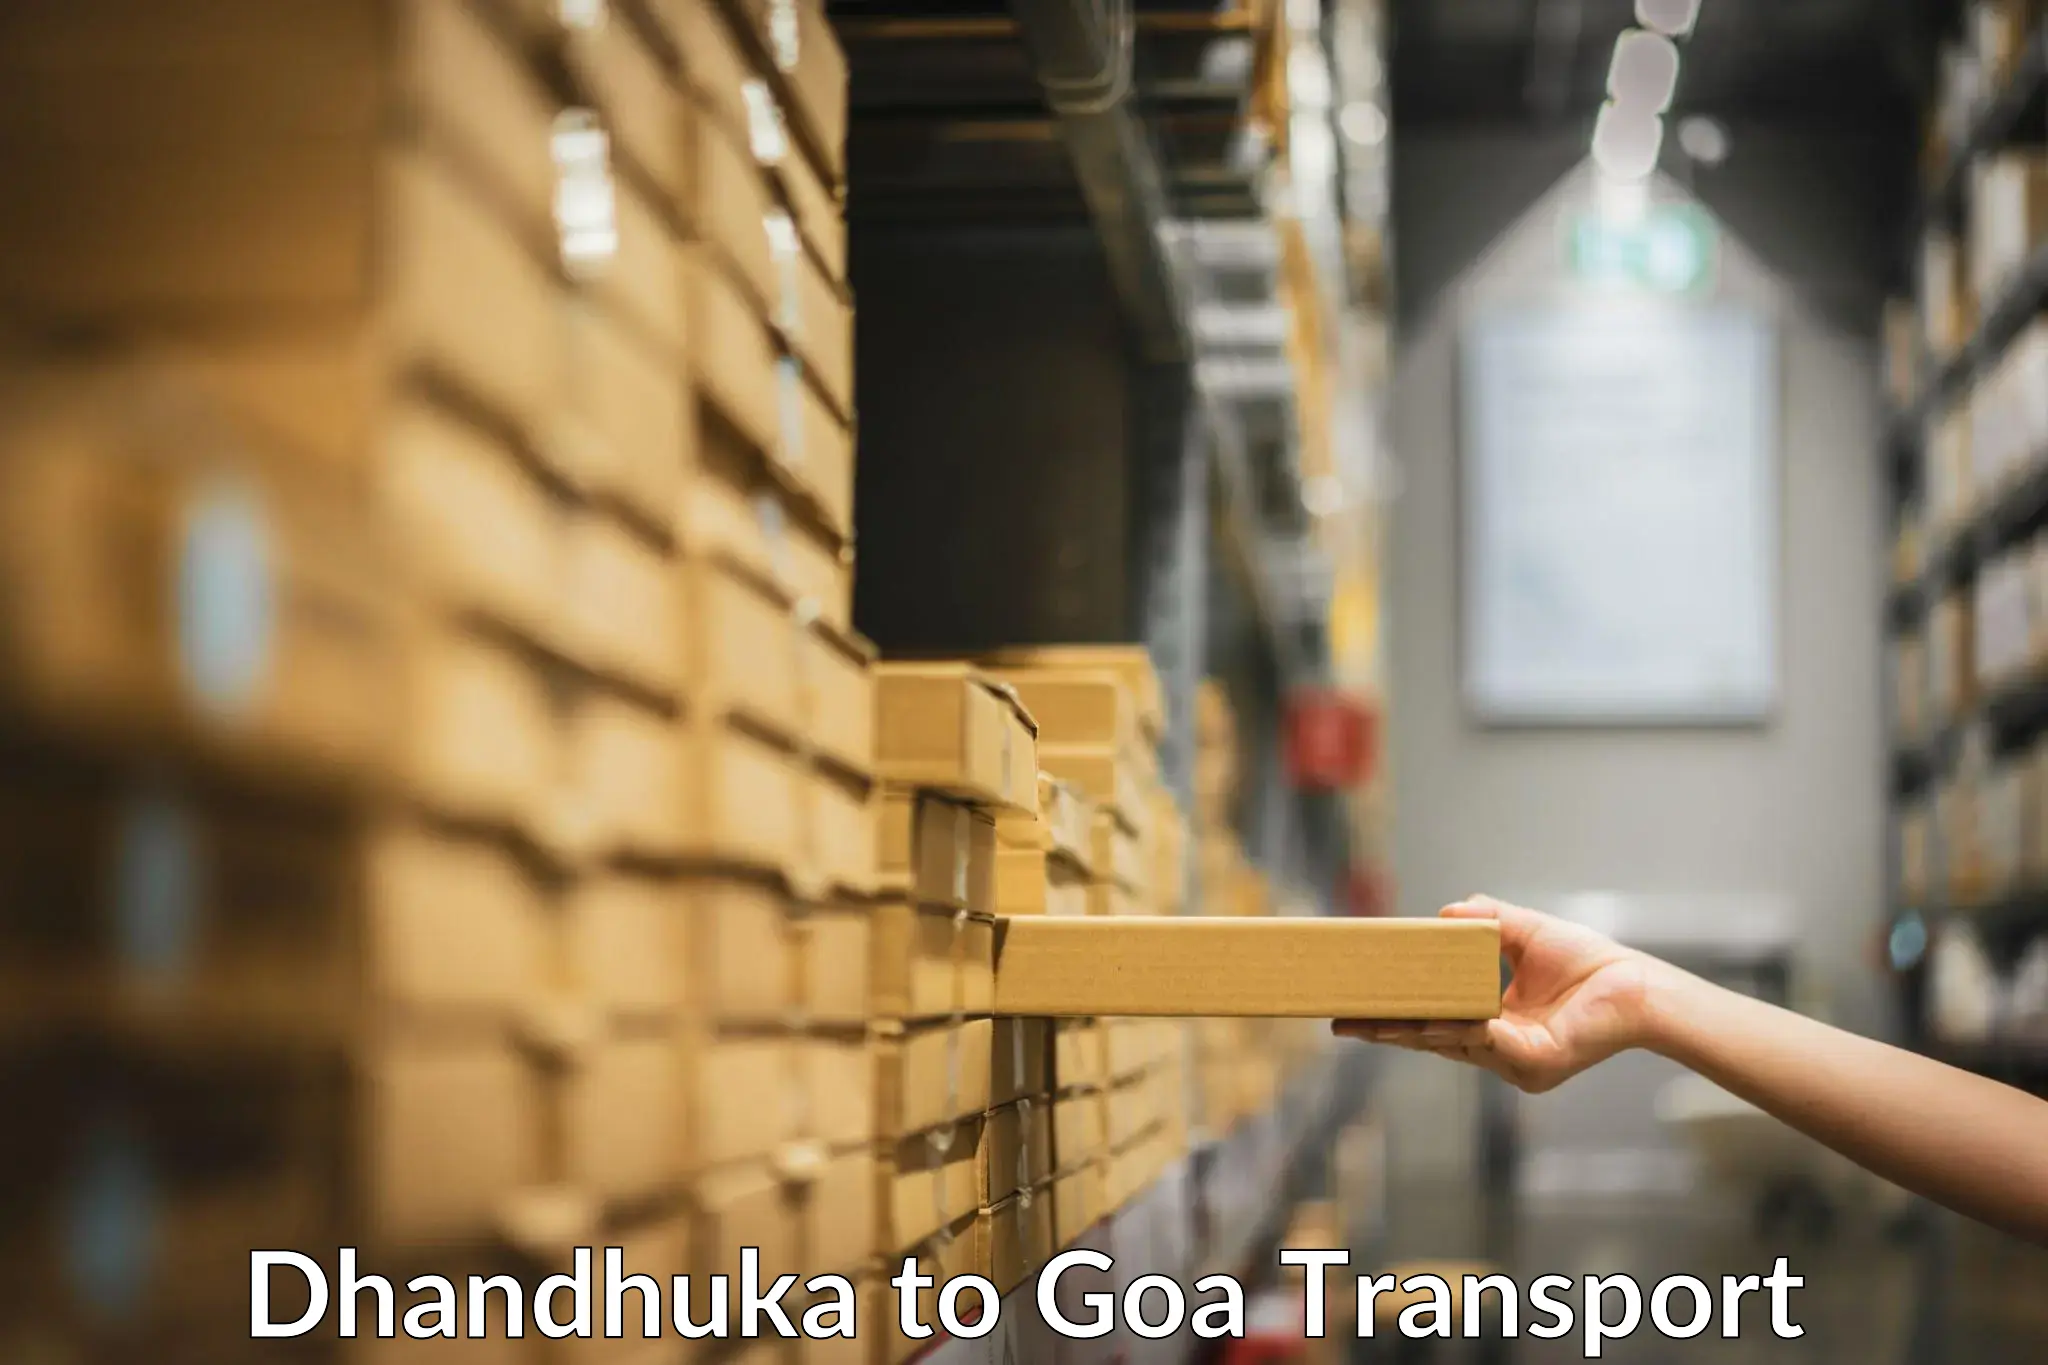 Truck transport companies in India Dhandhuka to Panjim